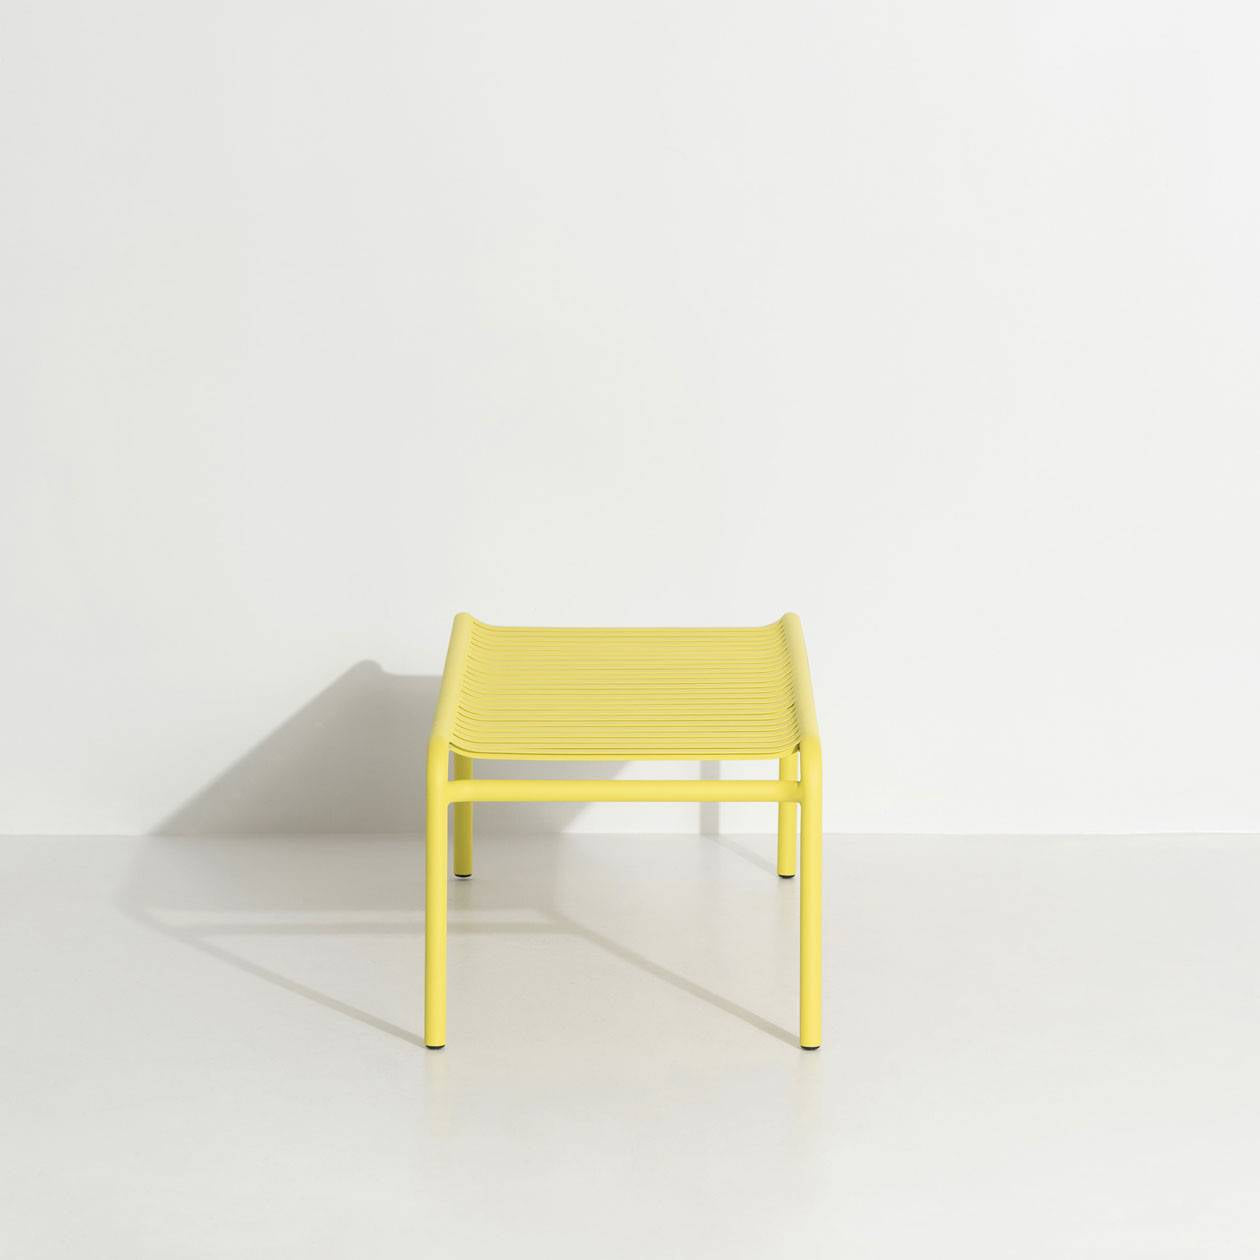 Week-End Coffee Table large in Yellow präsentiert im Onlineshop von KAQTU Design AG. Beistelltisch Outdoor ist von Petite Friture